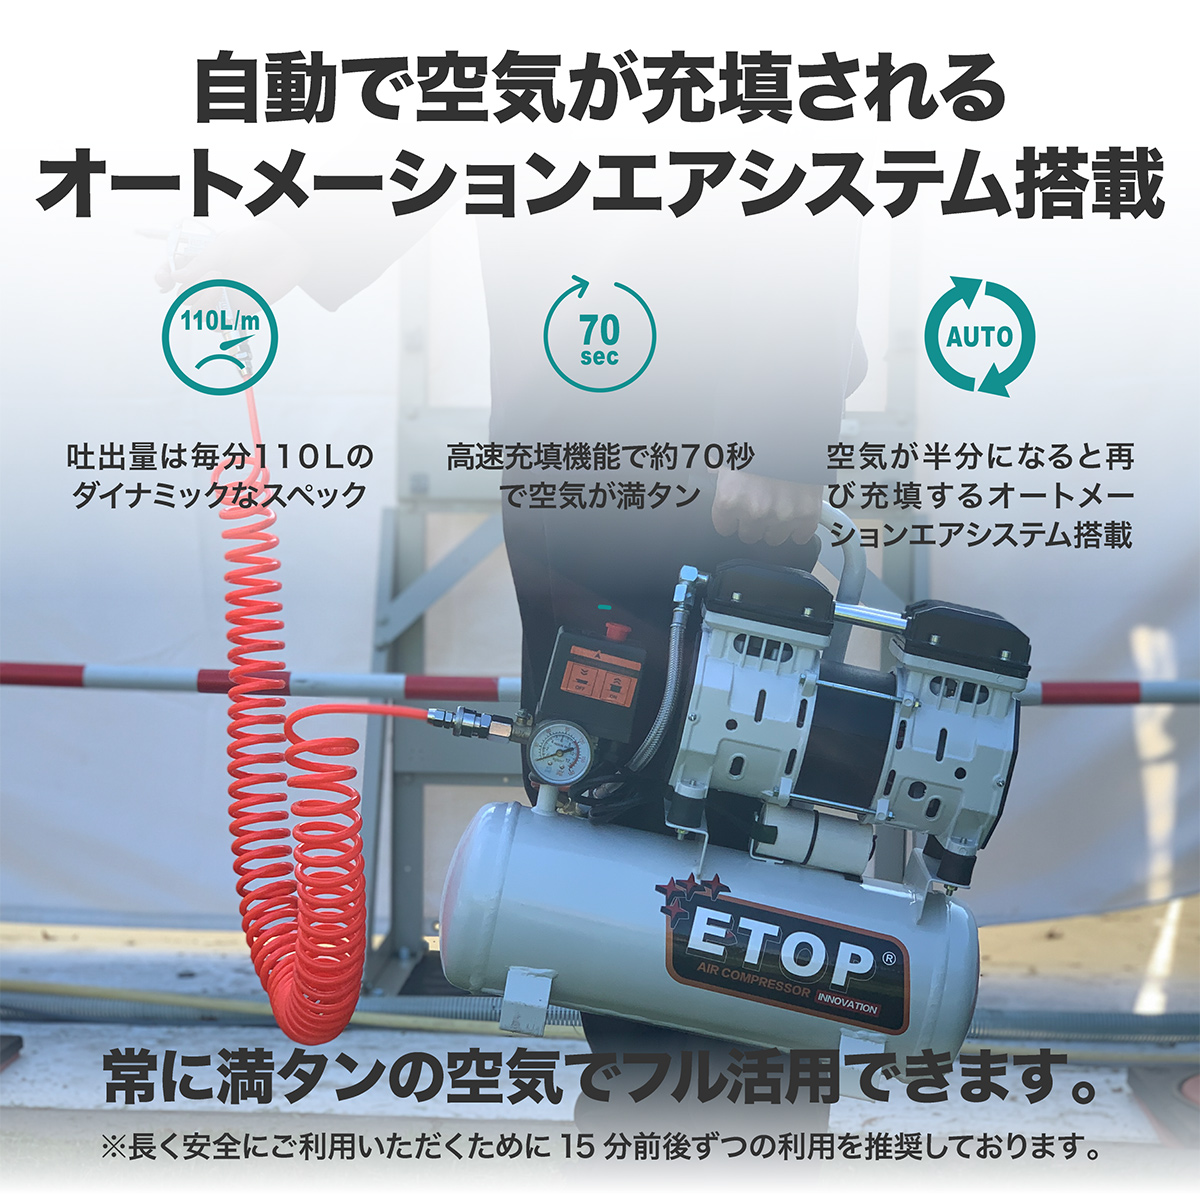 ETOPのエアーコンプレッサー9L(9リットル)は自動で空気が充填されるオートメーションエアシステム搭載。静音で100Vなのに常に満タンの空気でフル活用できます。